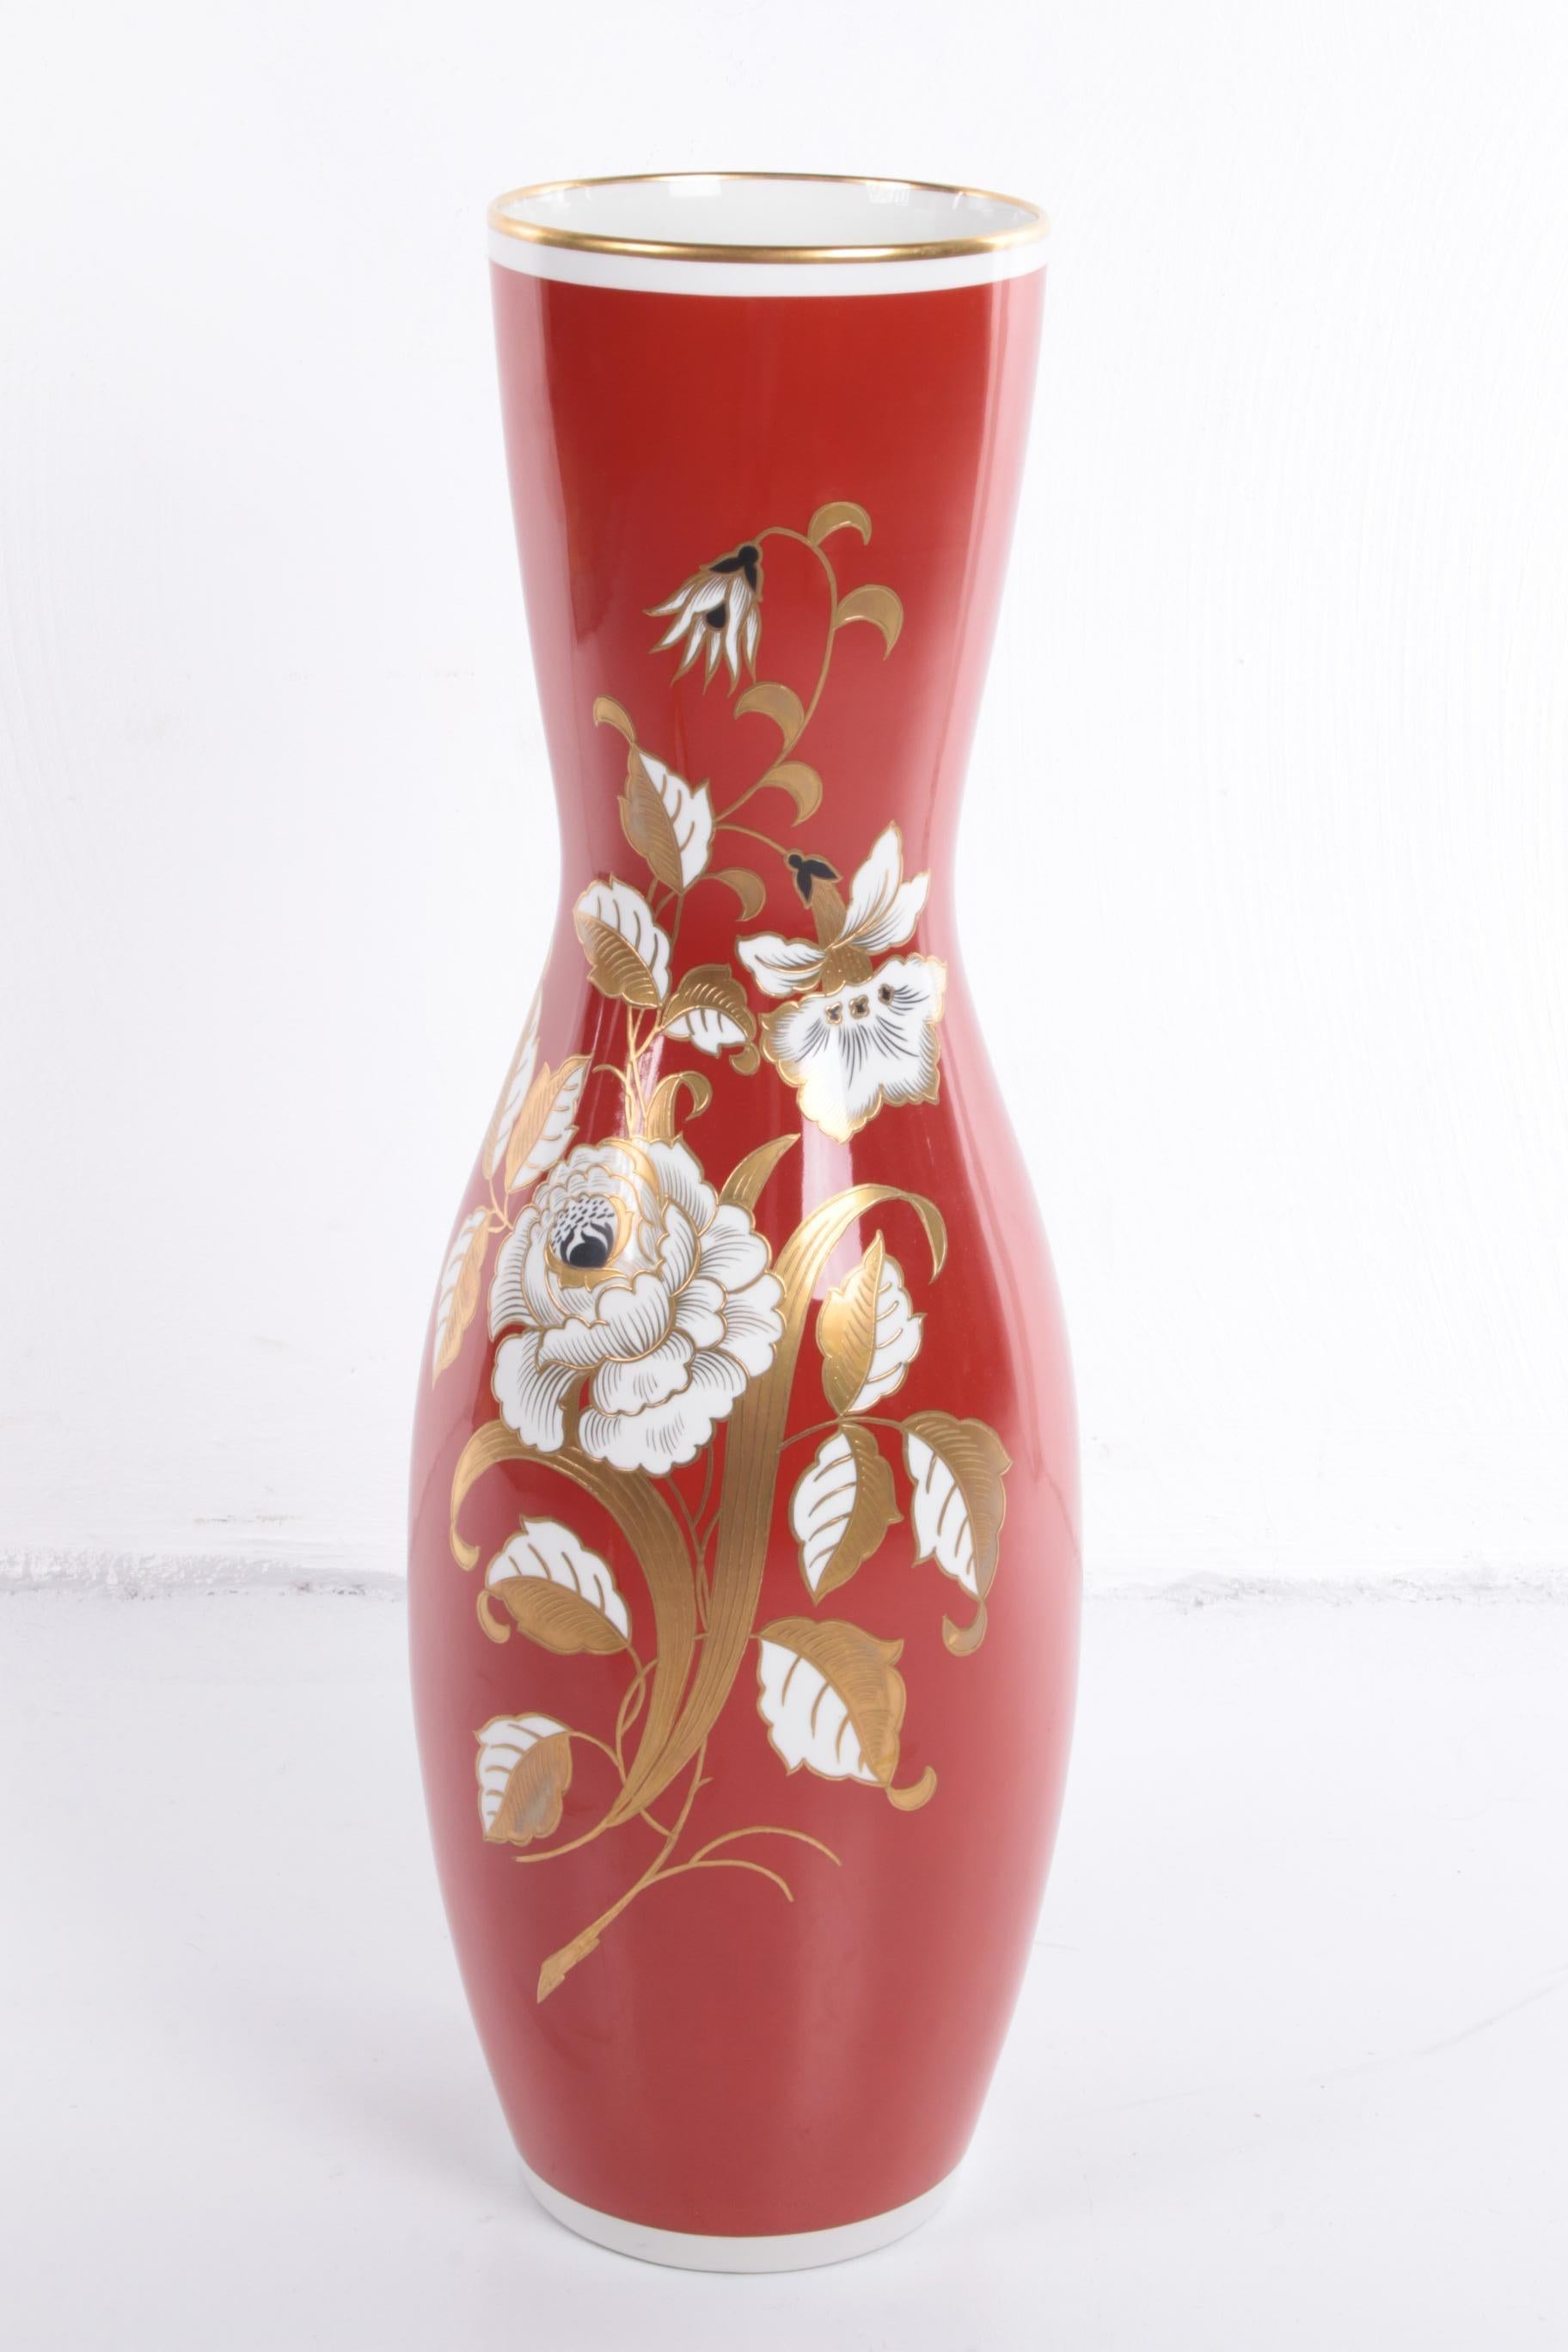 Grand vase en porcelaine rouge avec fleurs dorées VEB Wallendorf

Rare grand vase peint à la main,

De l'usine de porcelaine allemande Wallendorf 1966 à Heden,

Le vase a une belle couleur rouge avec des fleurs dorées,

Poids 10 kg.